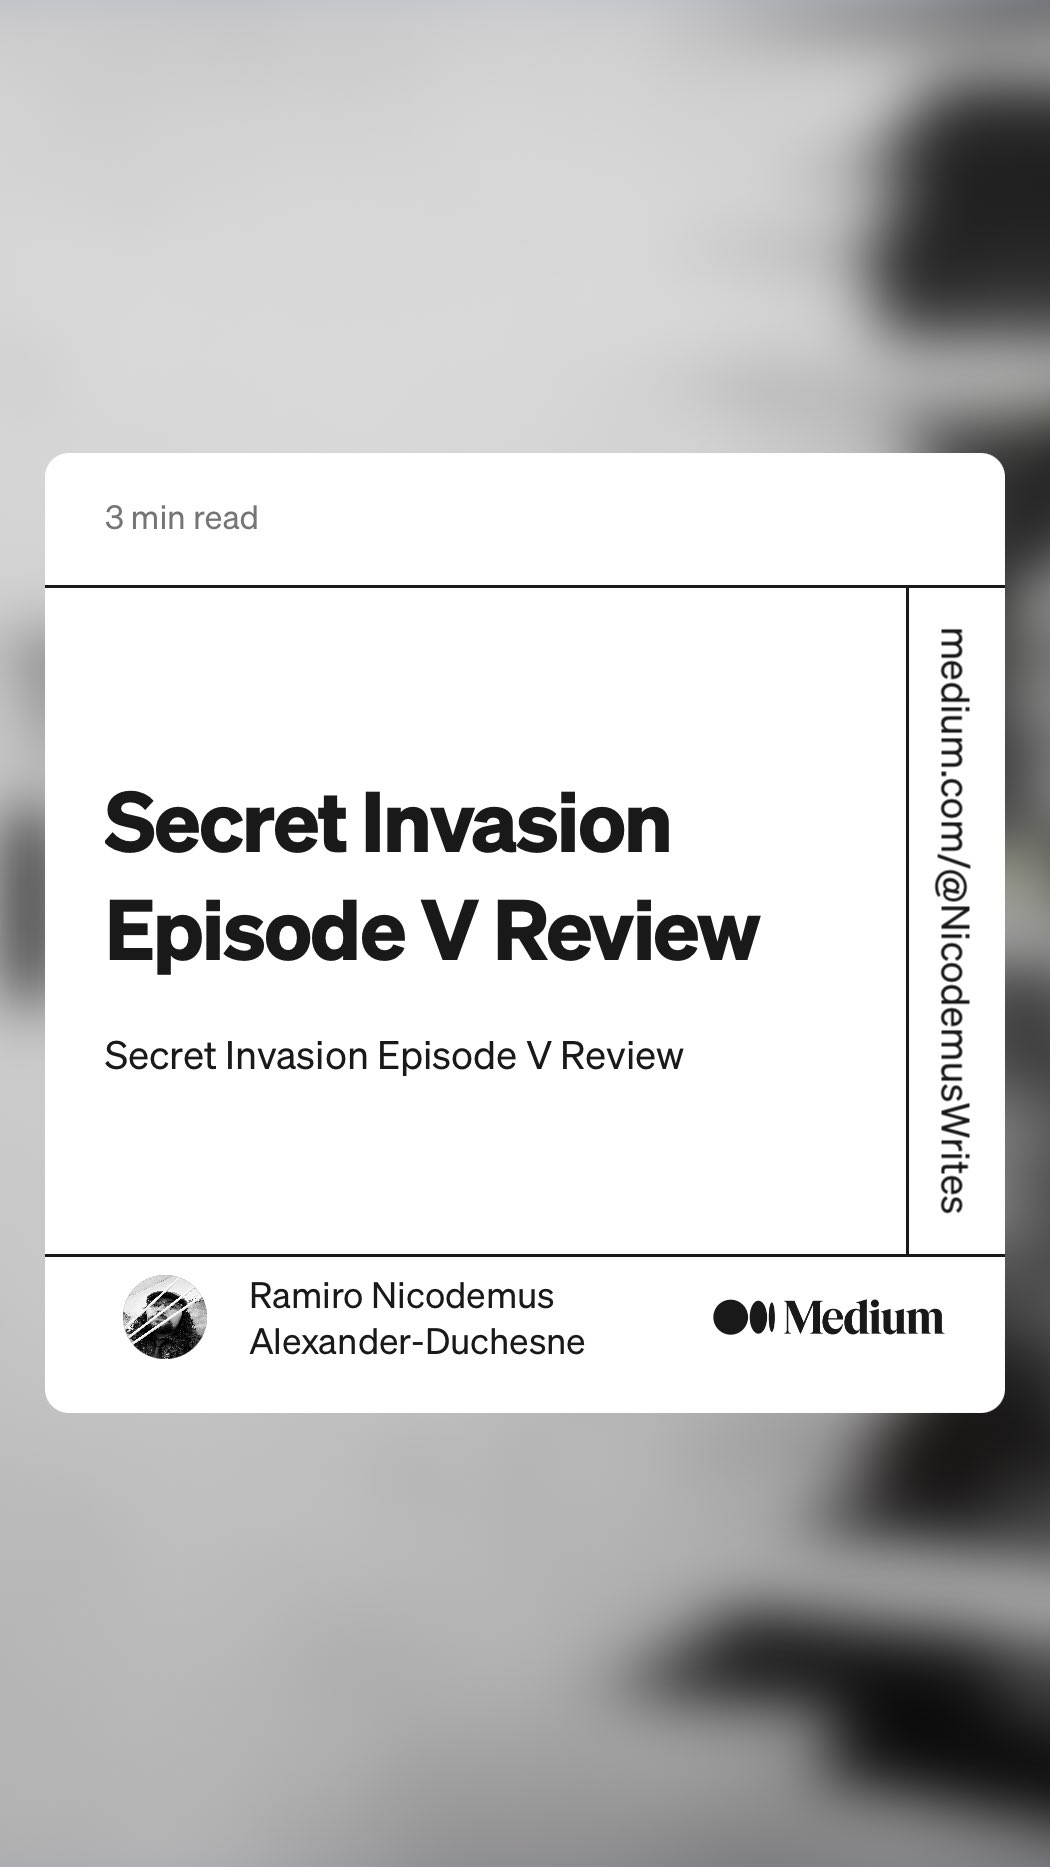 Secret Invasion Episode VI Review, by Ramiro Nicodemus Alexander-Duchesne